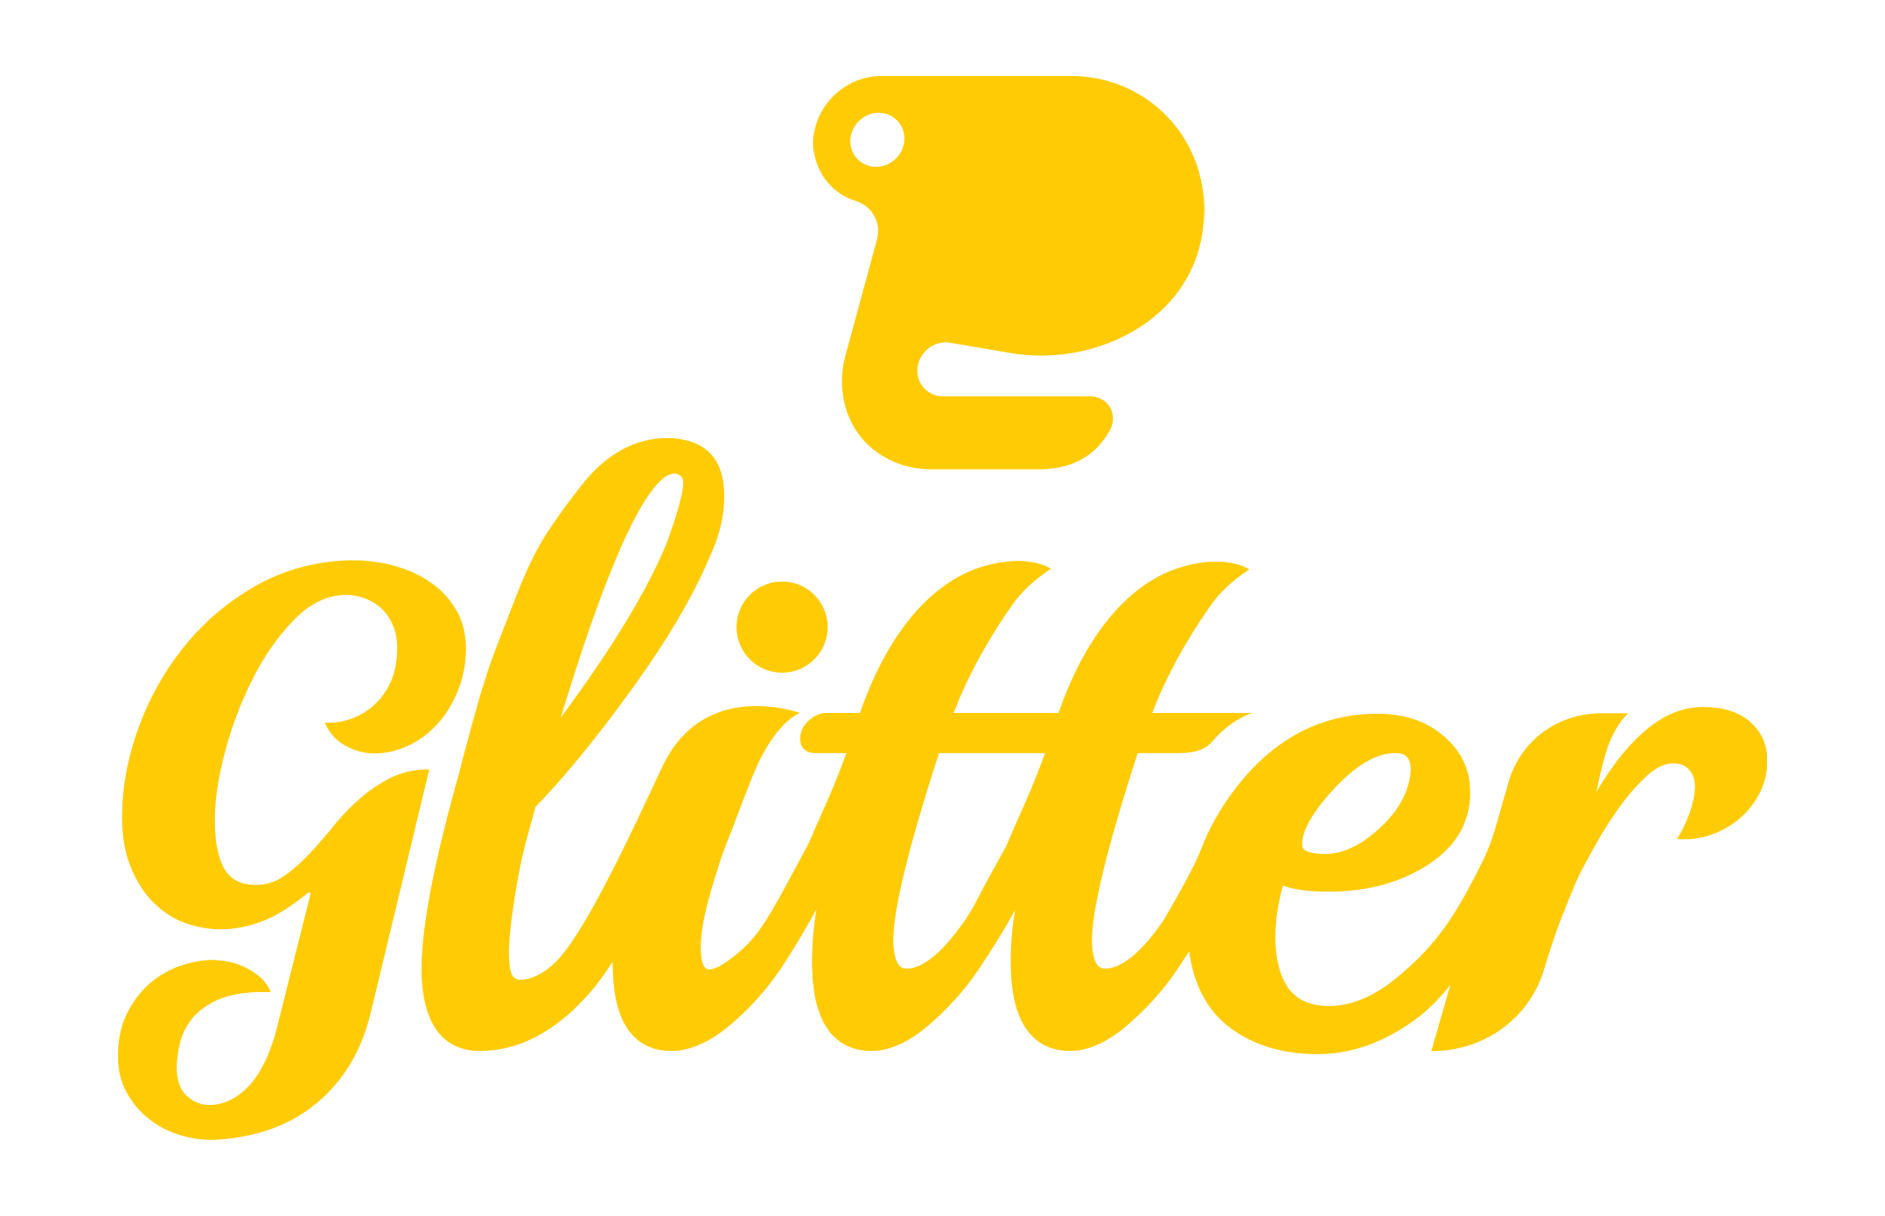 Glitter Graphics Logo - Glitter Advertising Advertising web site